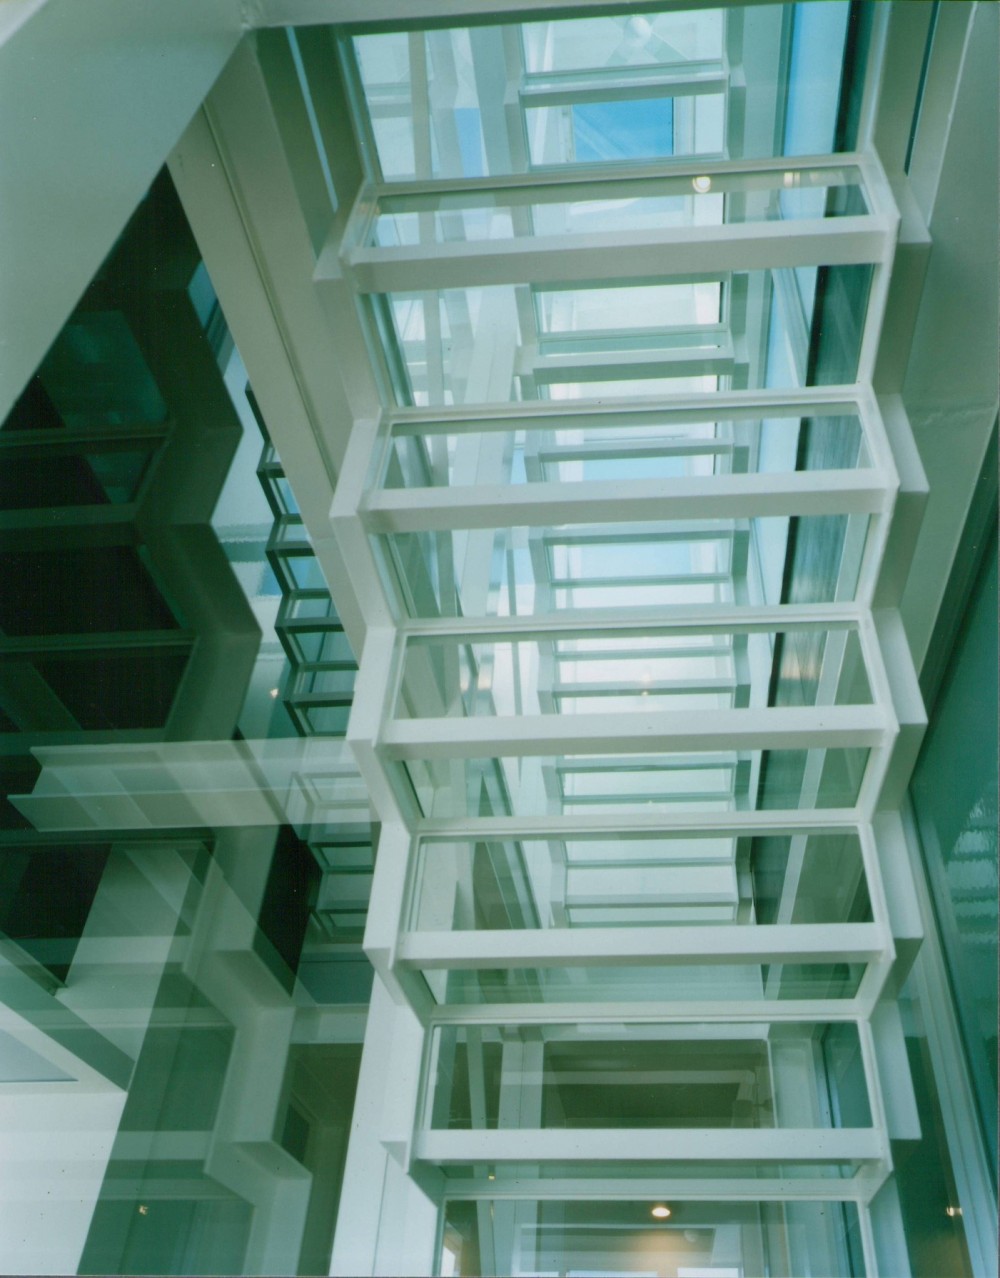 原空間工作所「ガラス階段の家～透明ガラス階段が家中に光をとどける家～」